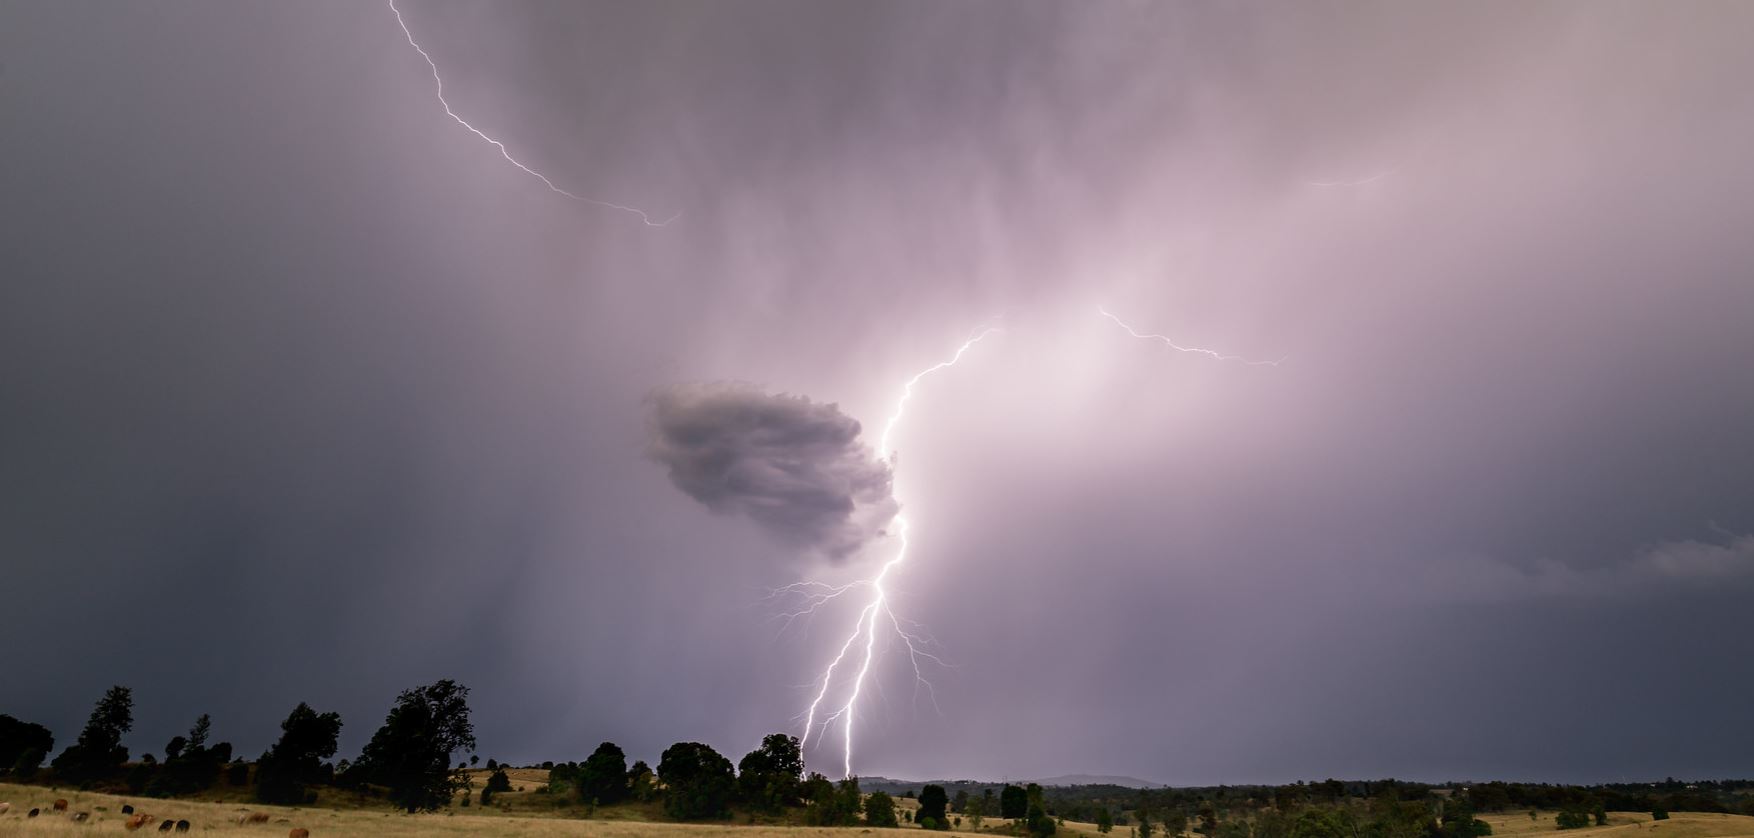 Des orages nocturnes vont se produire près de l'Atlantique et dans les régions voisines à partir de la fin de journée. (illustration) Flickr/texaus1